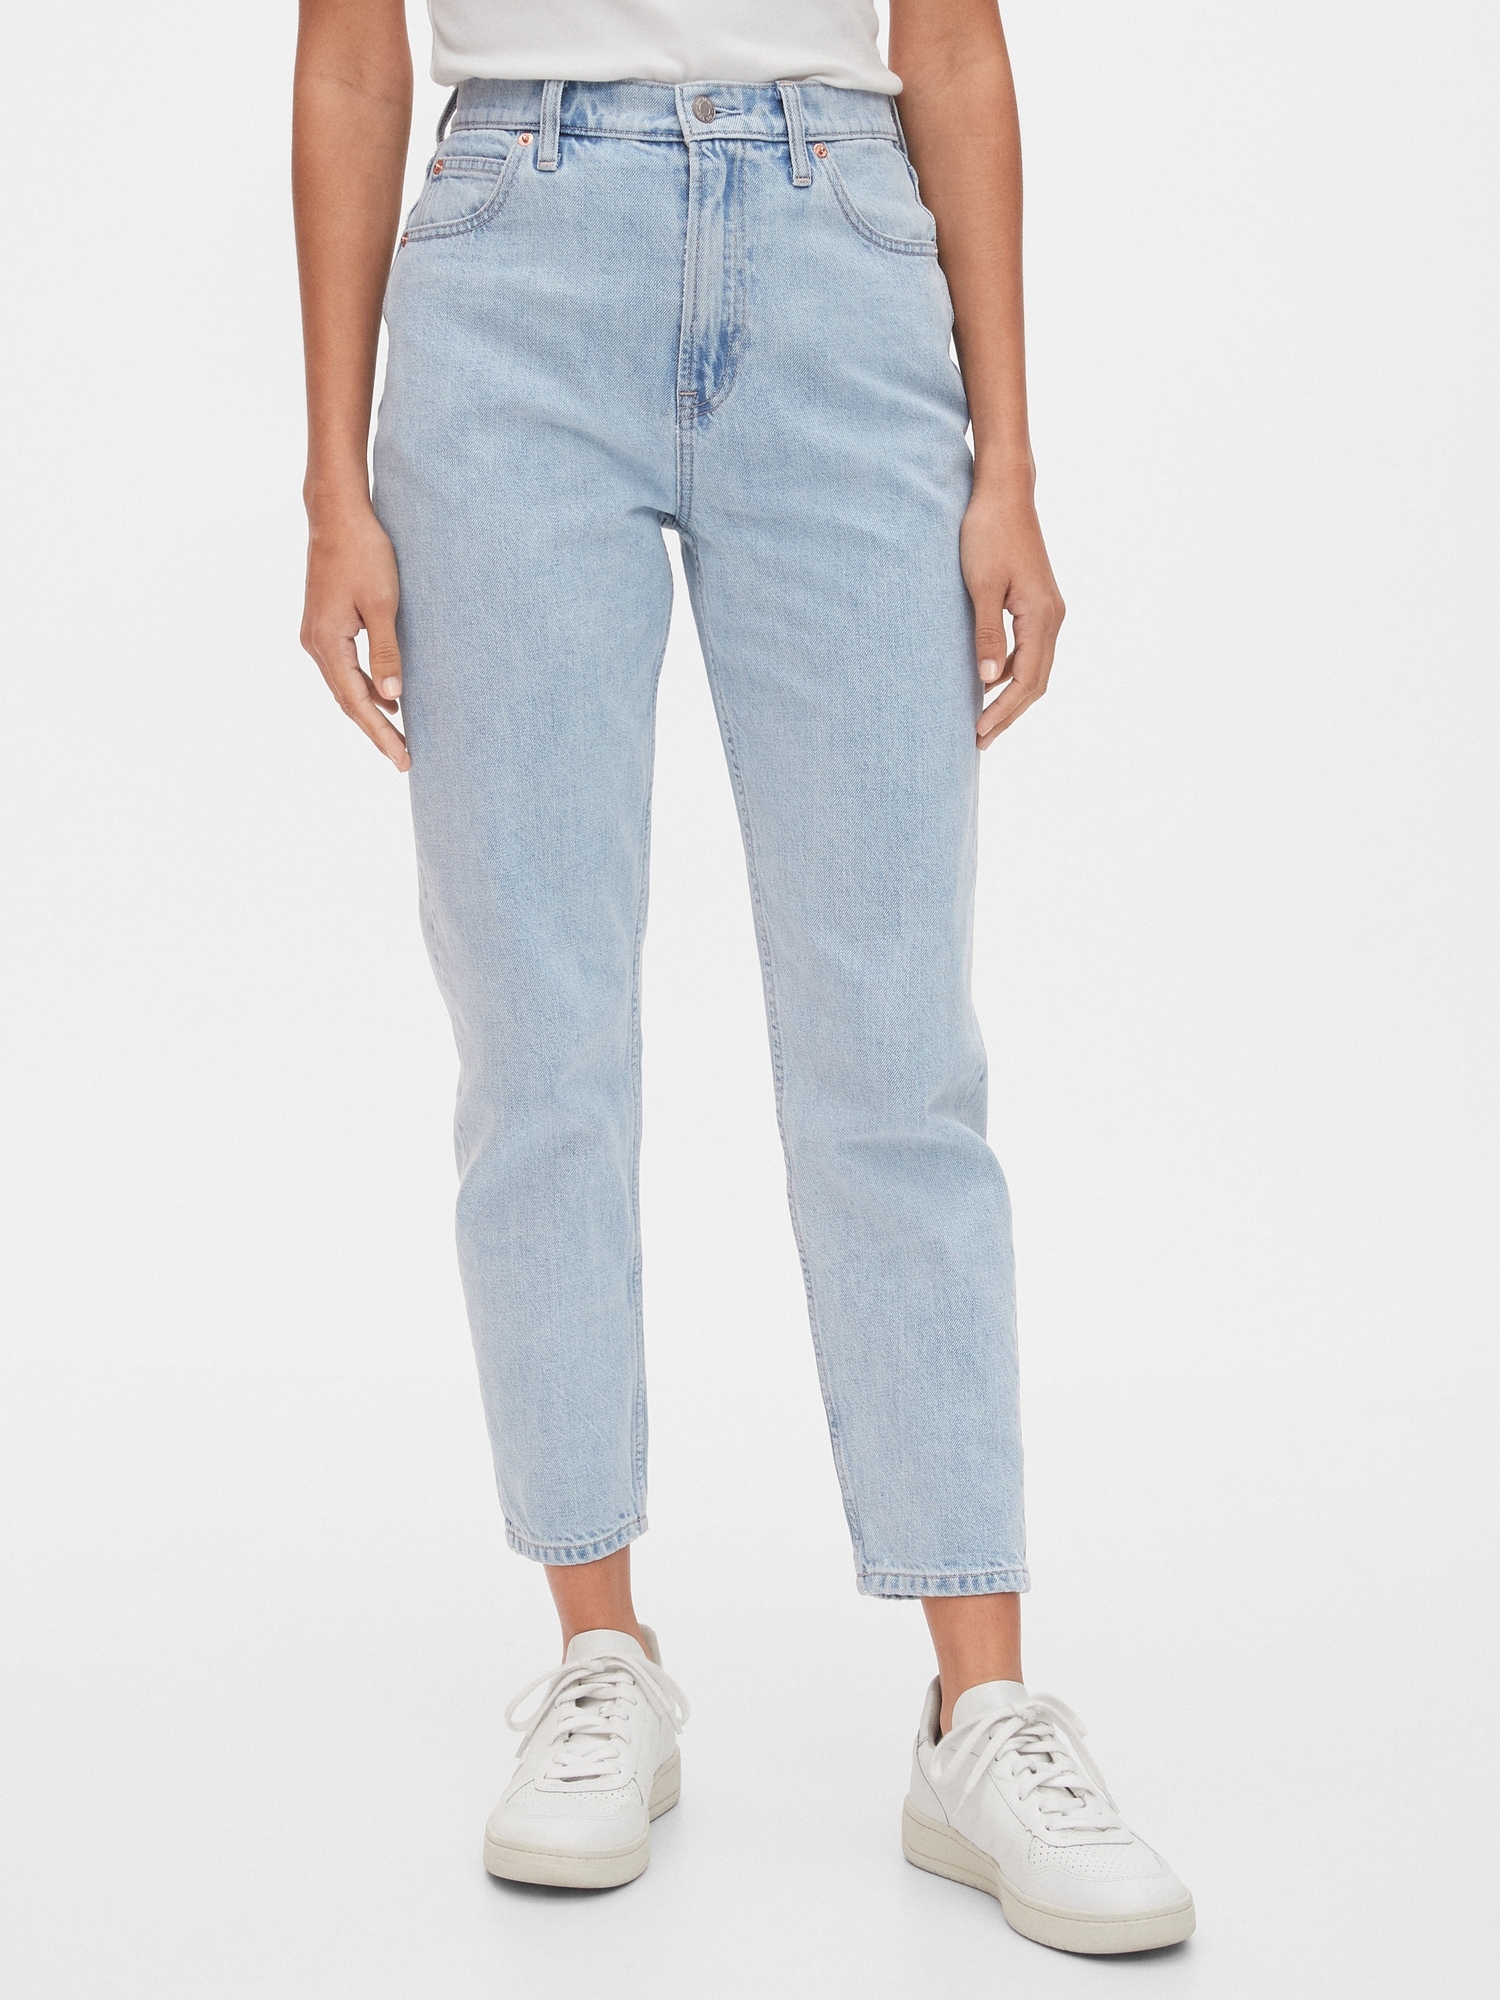 jeans gap at waist